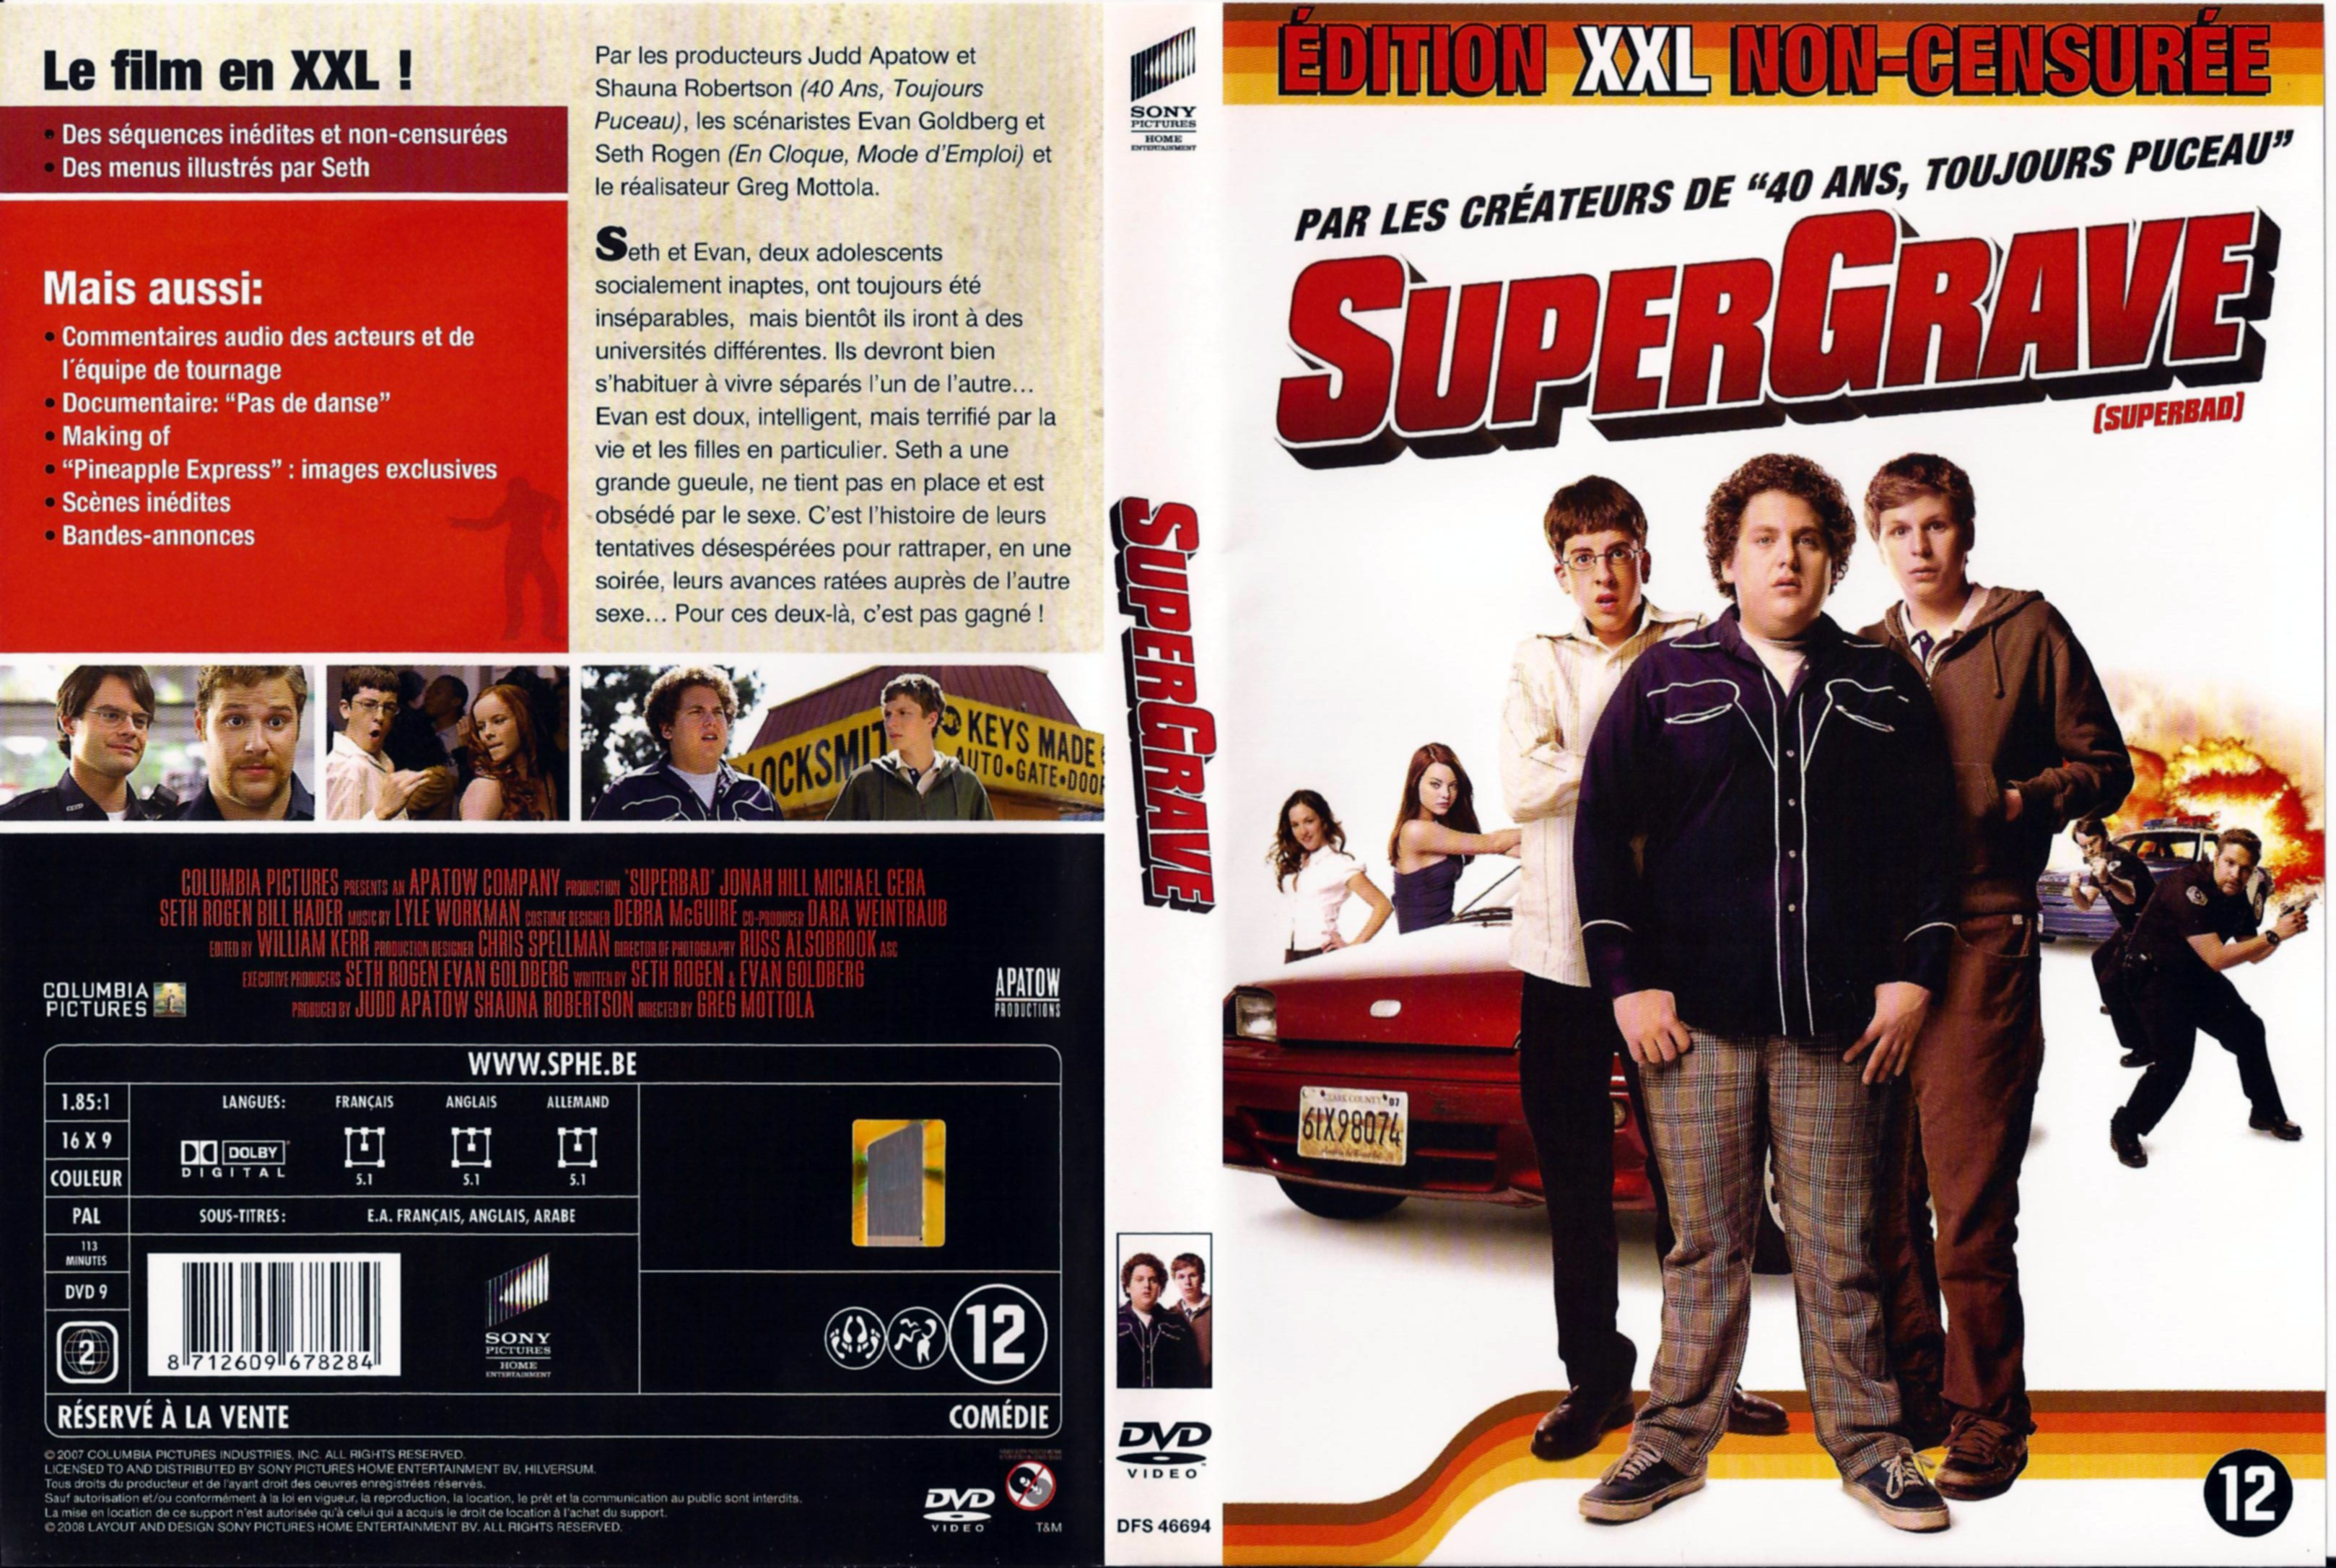 Jaquette DVD Supergrave v2